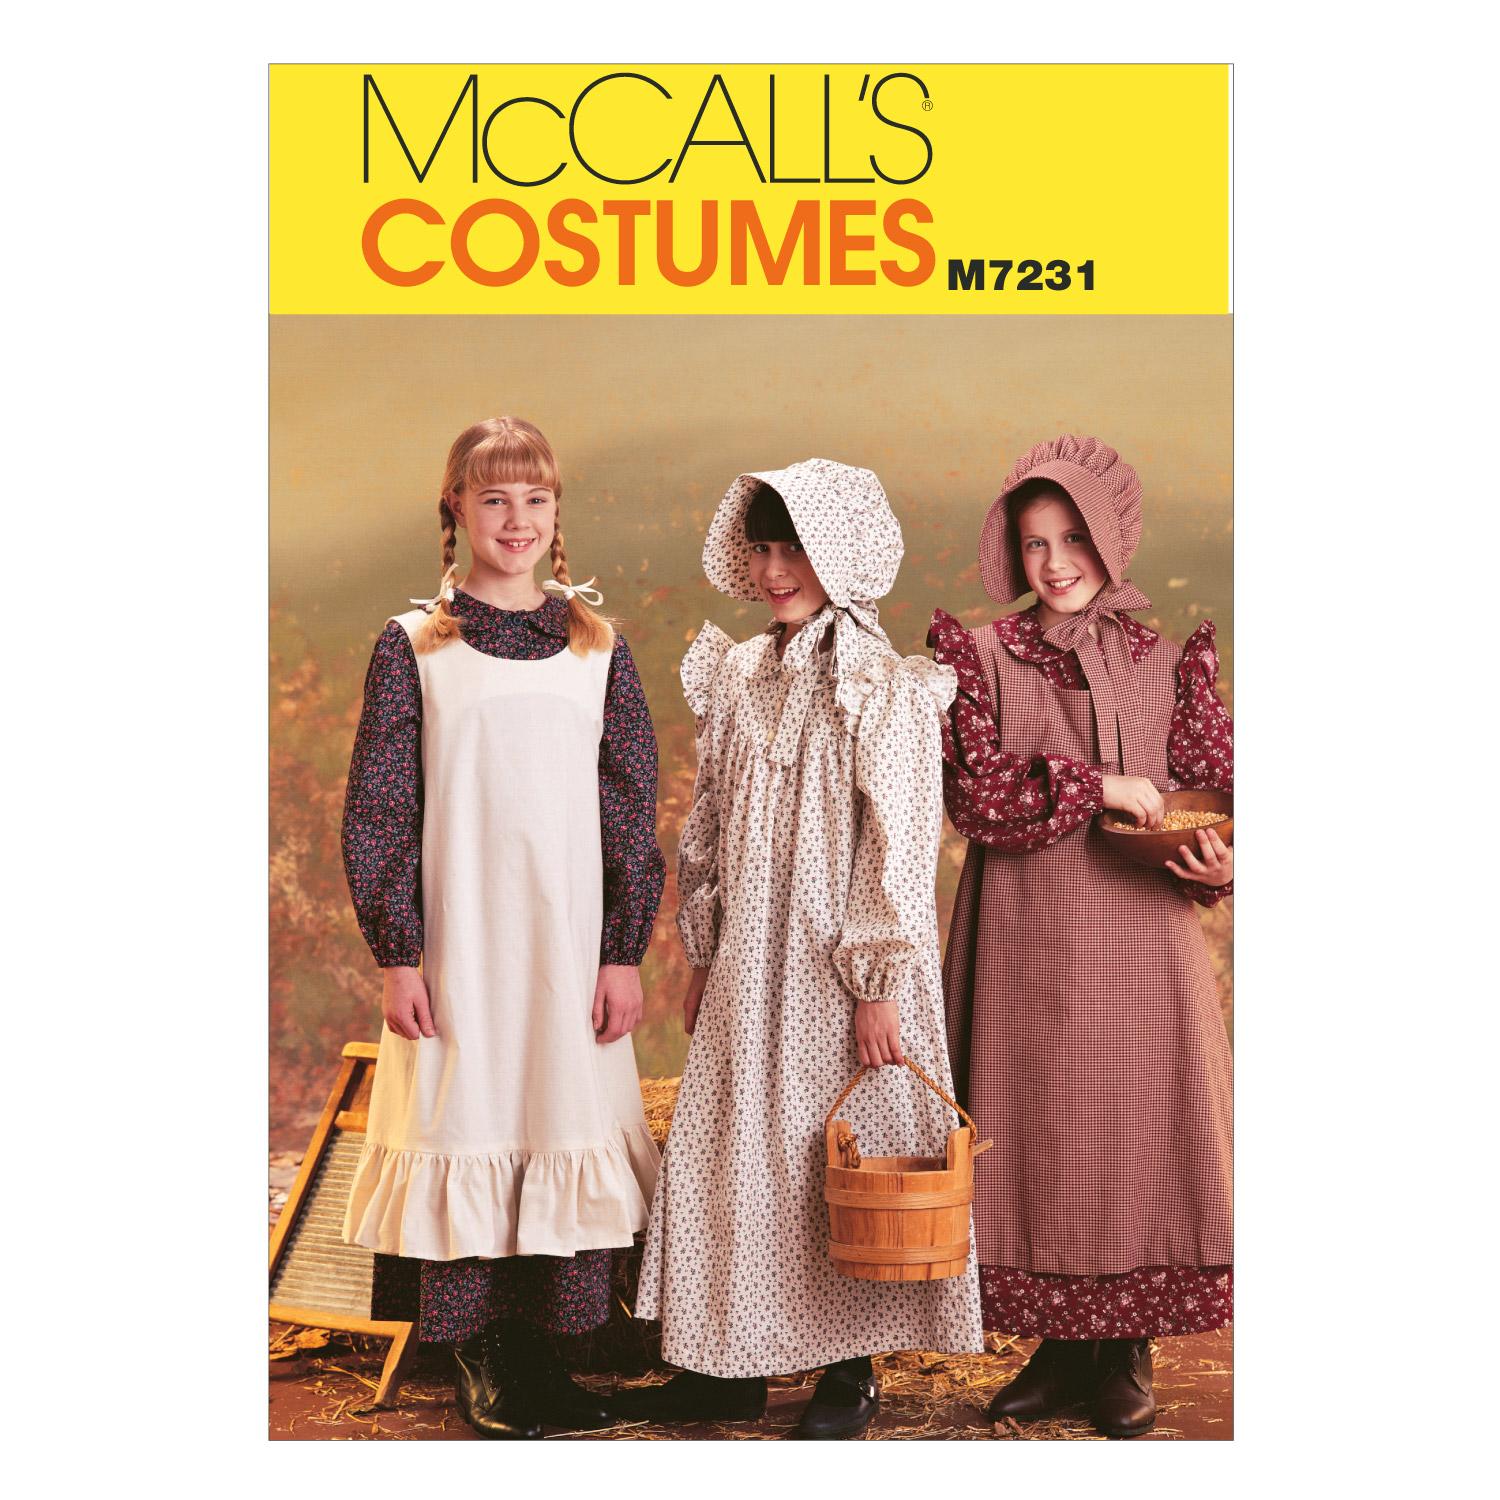 McCalls M7231 Costumes